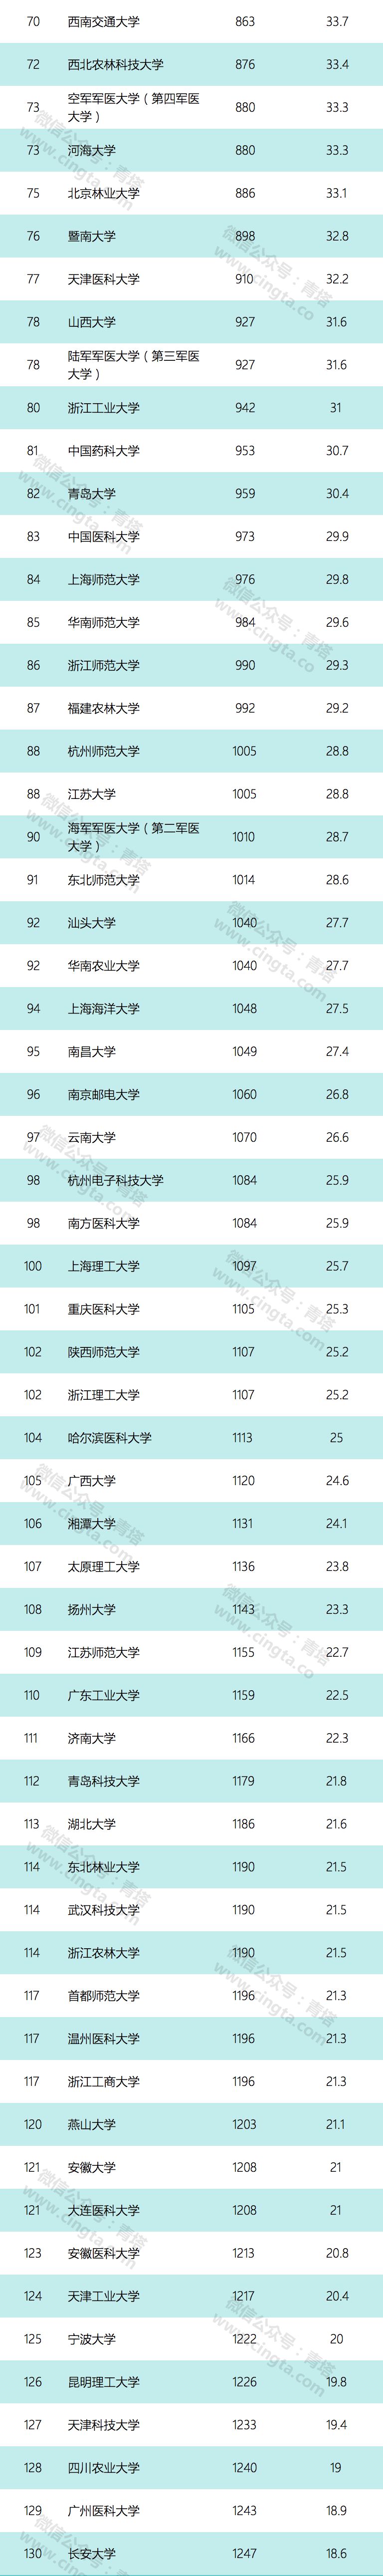 华南农业大学排名_非211类大学,华南农业大学排名前三,看看它2019年分数